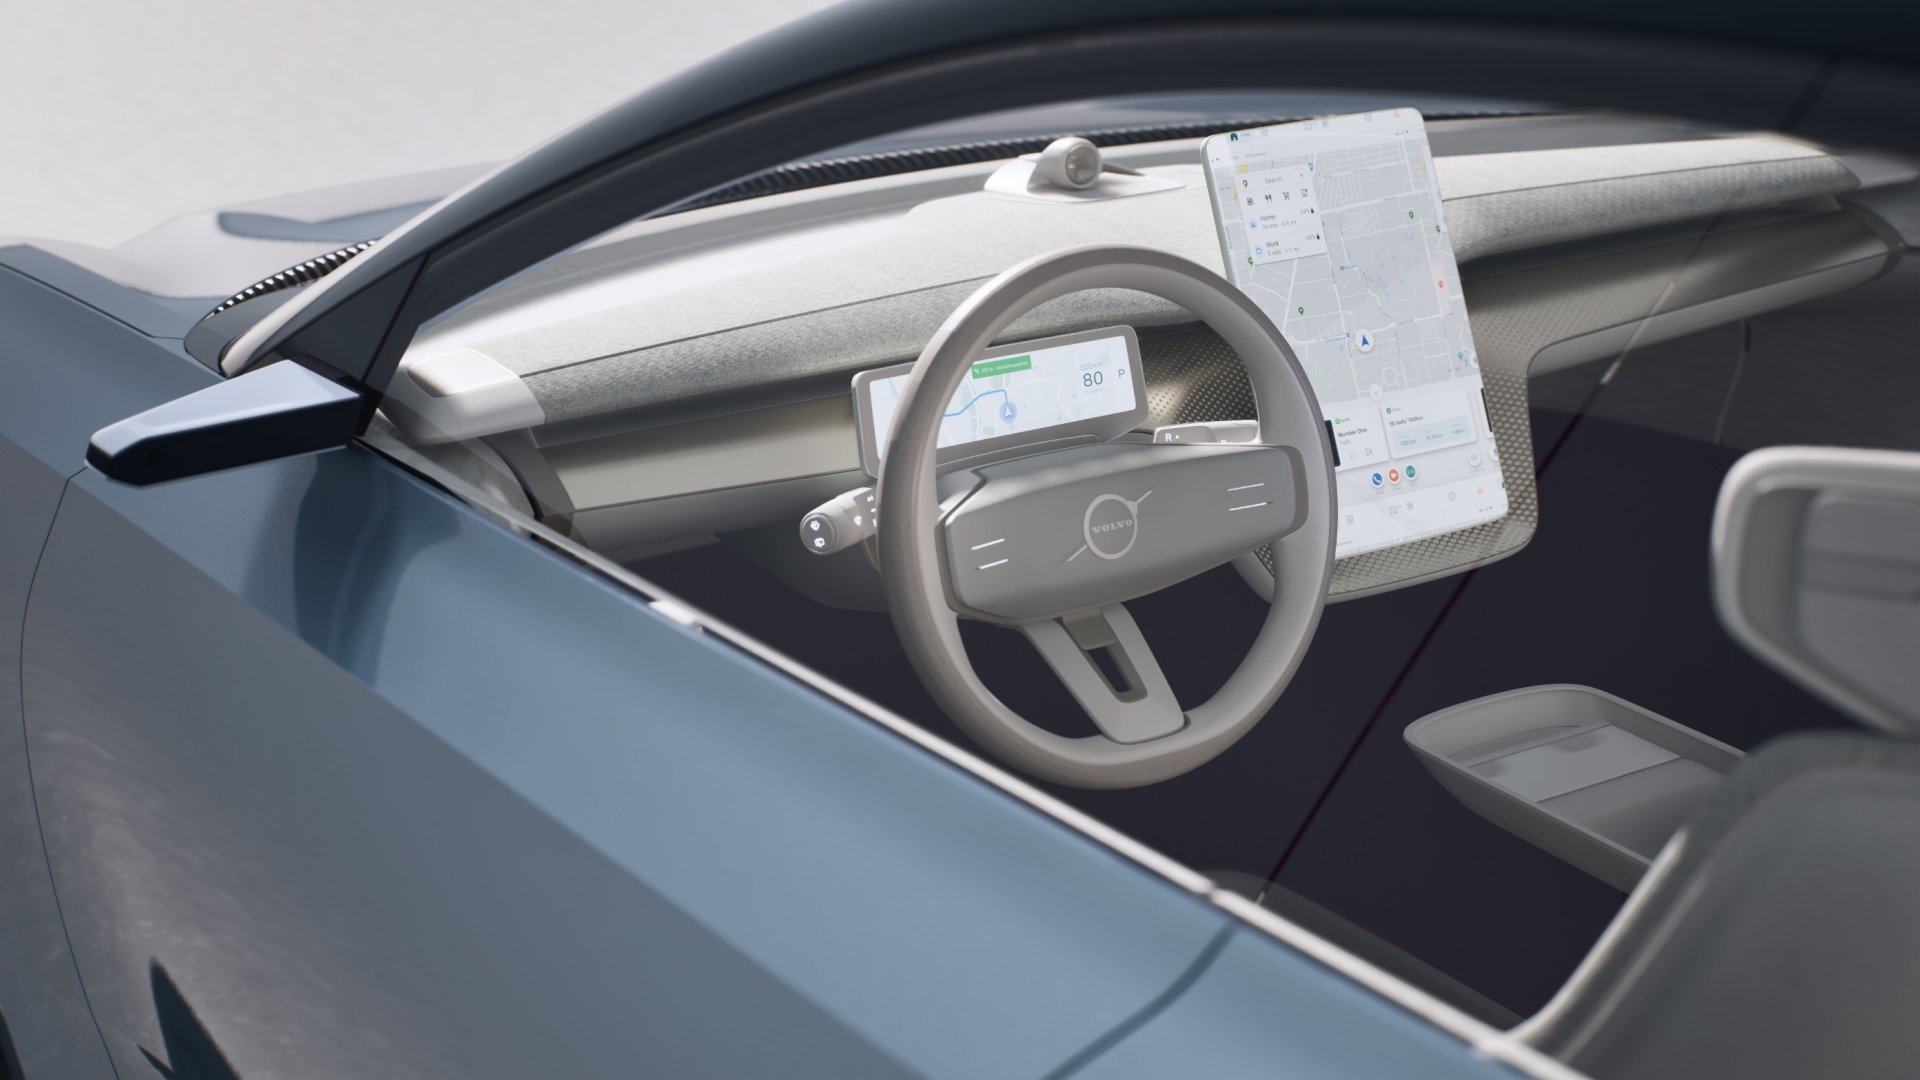 Volvo ed Epic Games portano la visualizzazione fotorealistica nelle auto con Unreal Engine